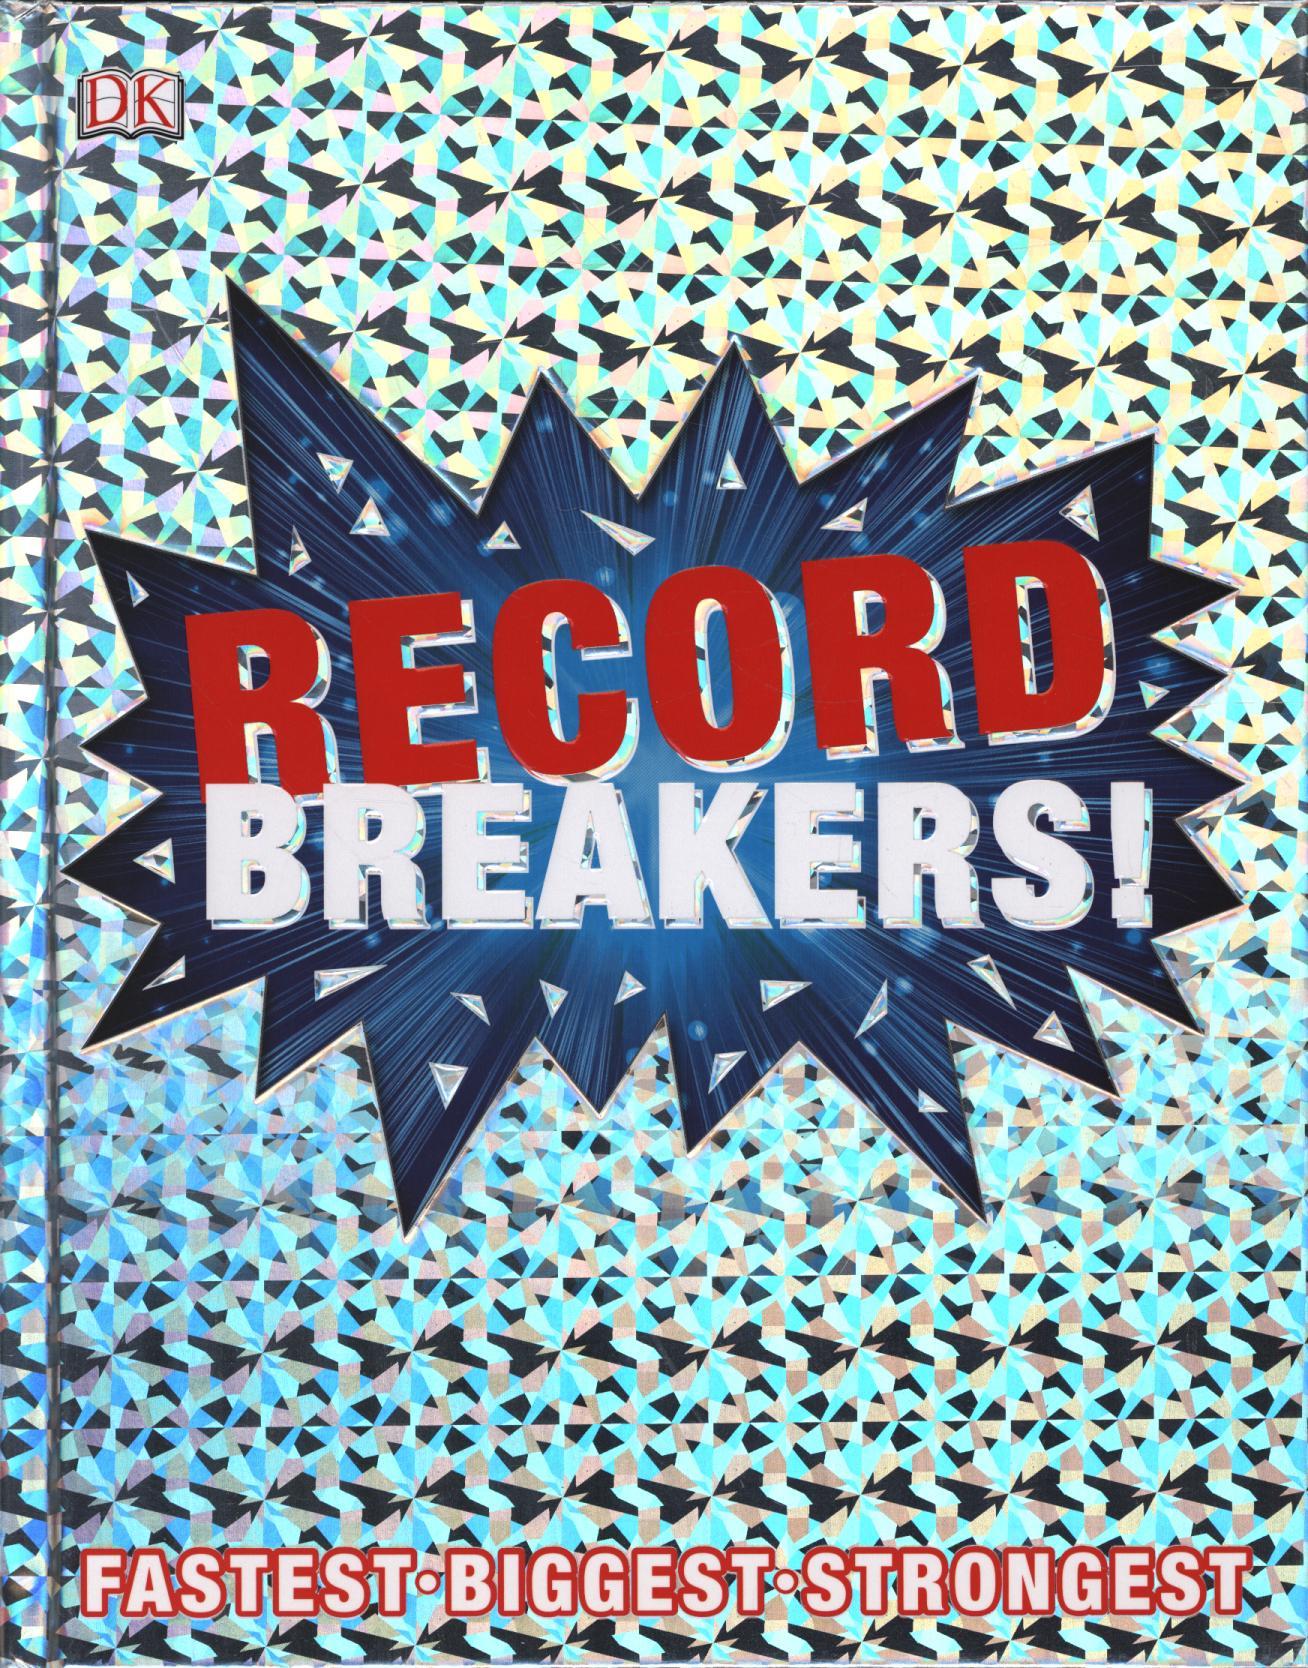 Record Breakers!